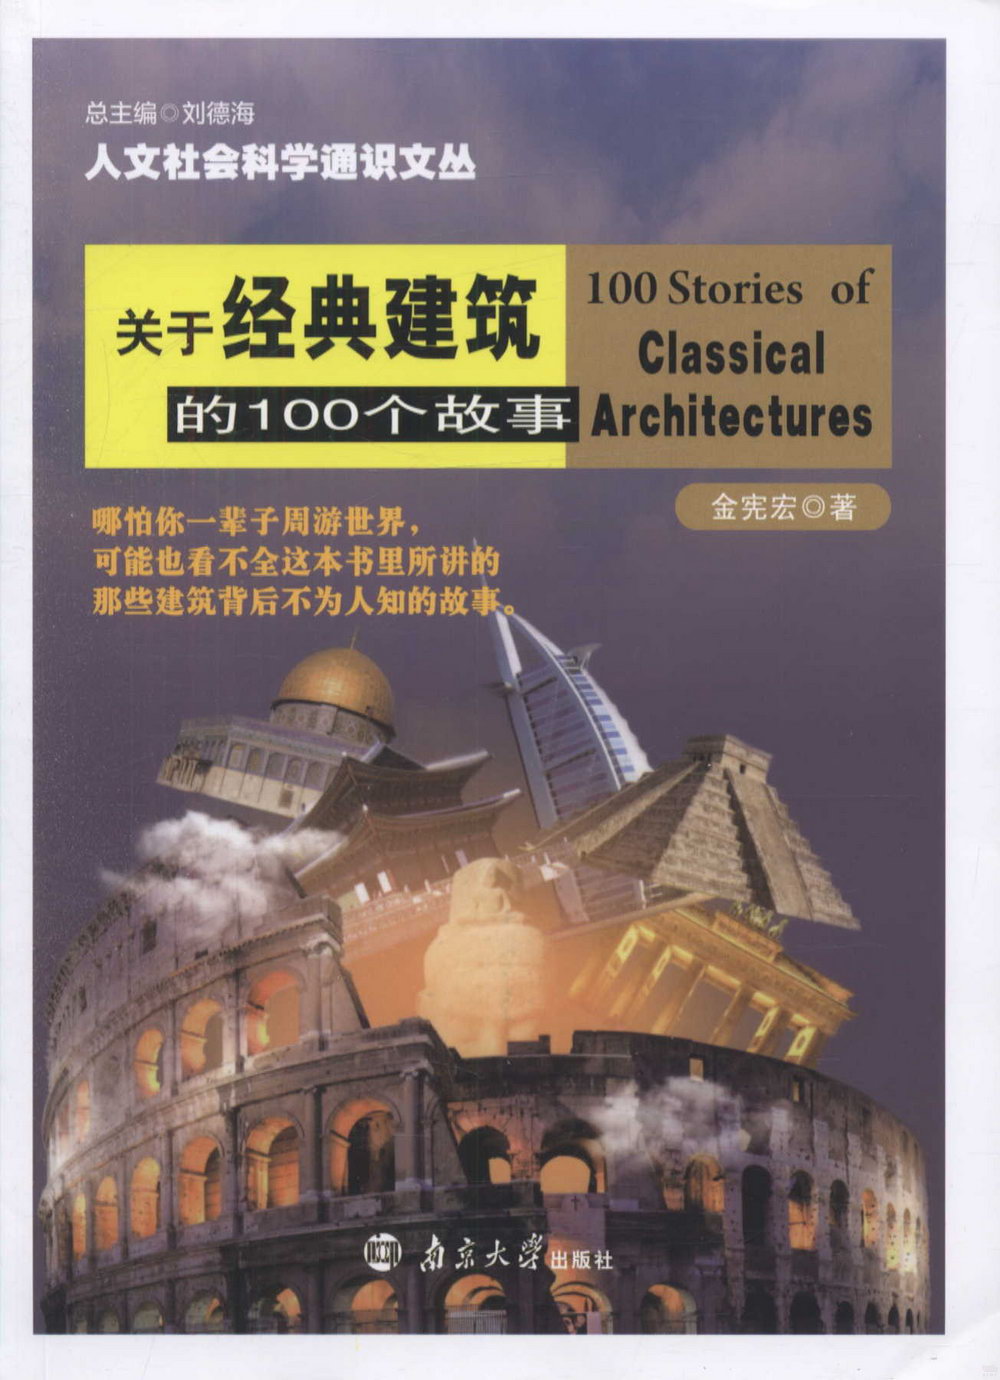 關於經典建築的100個故事